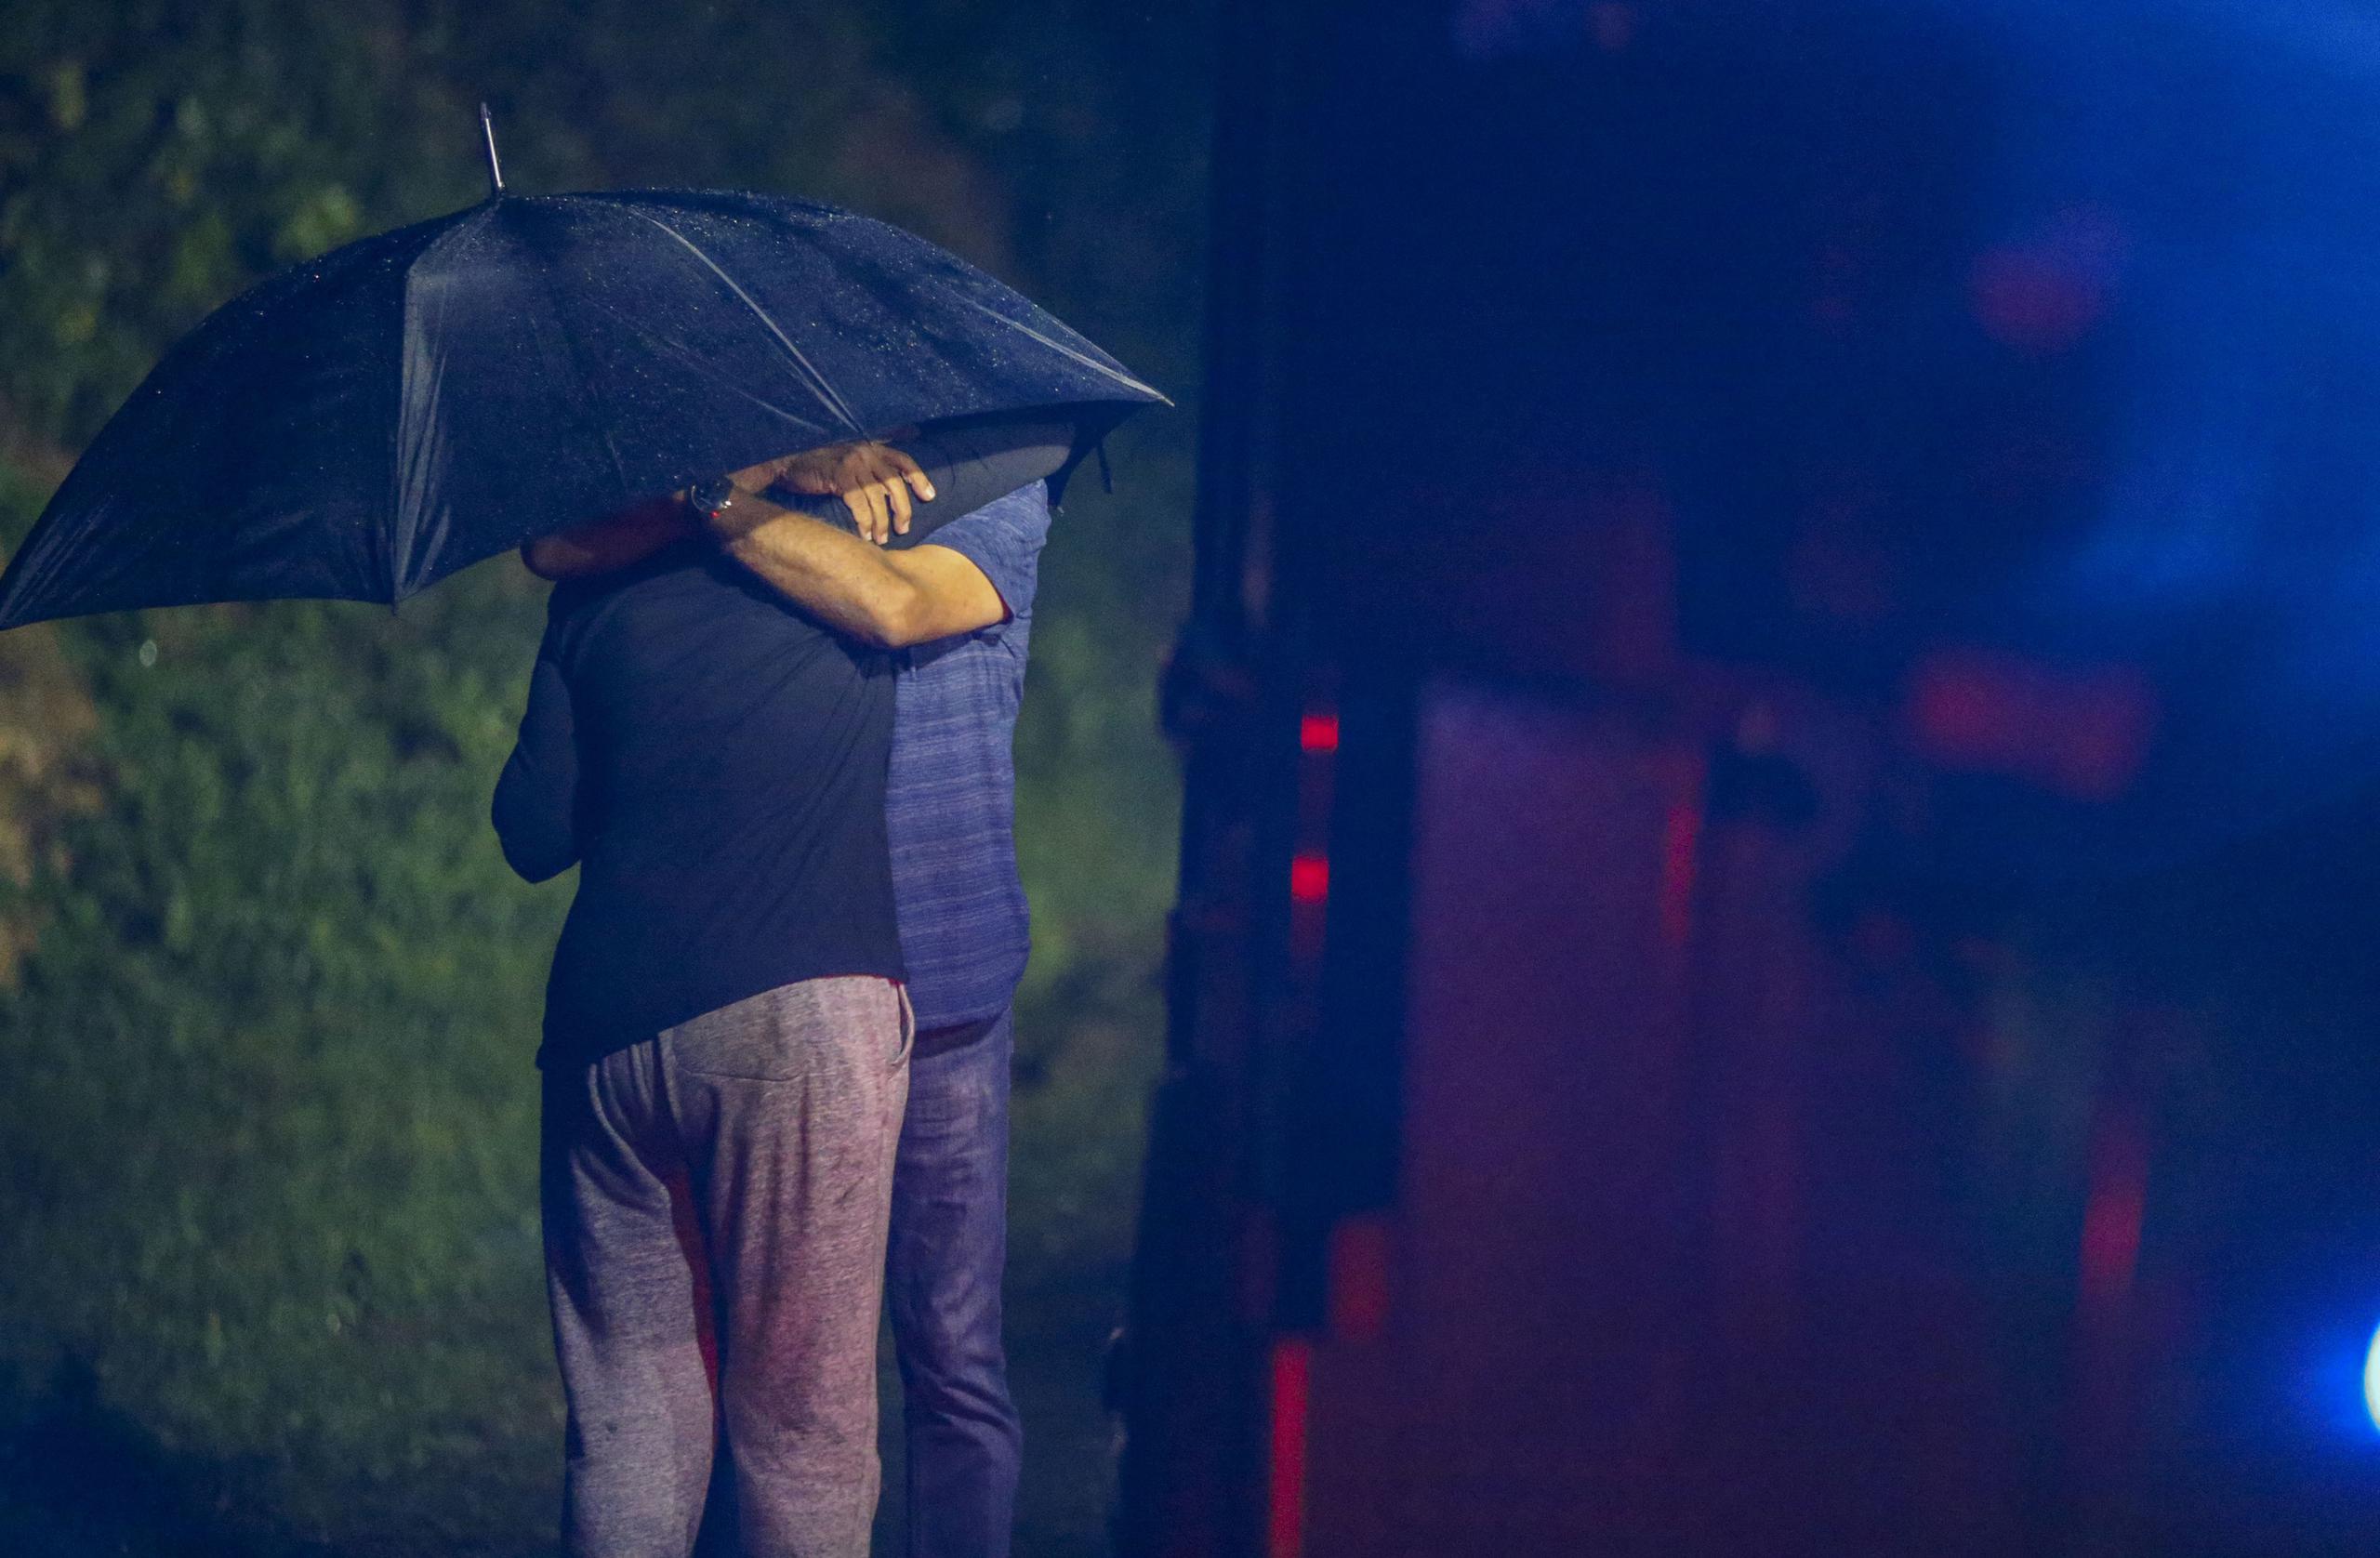 Una persona se abraza a otra cerca del área donde ocurrieron los asesinatos.